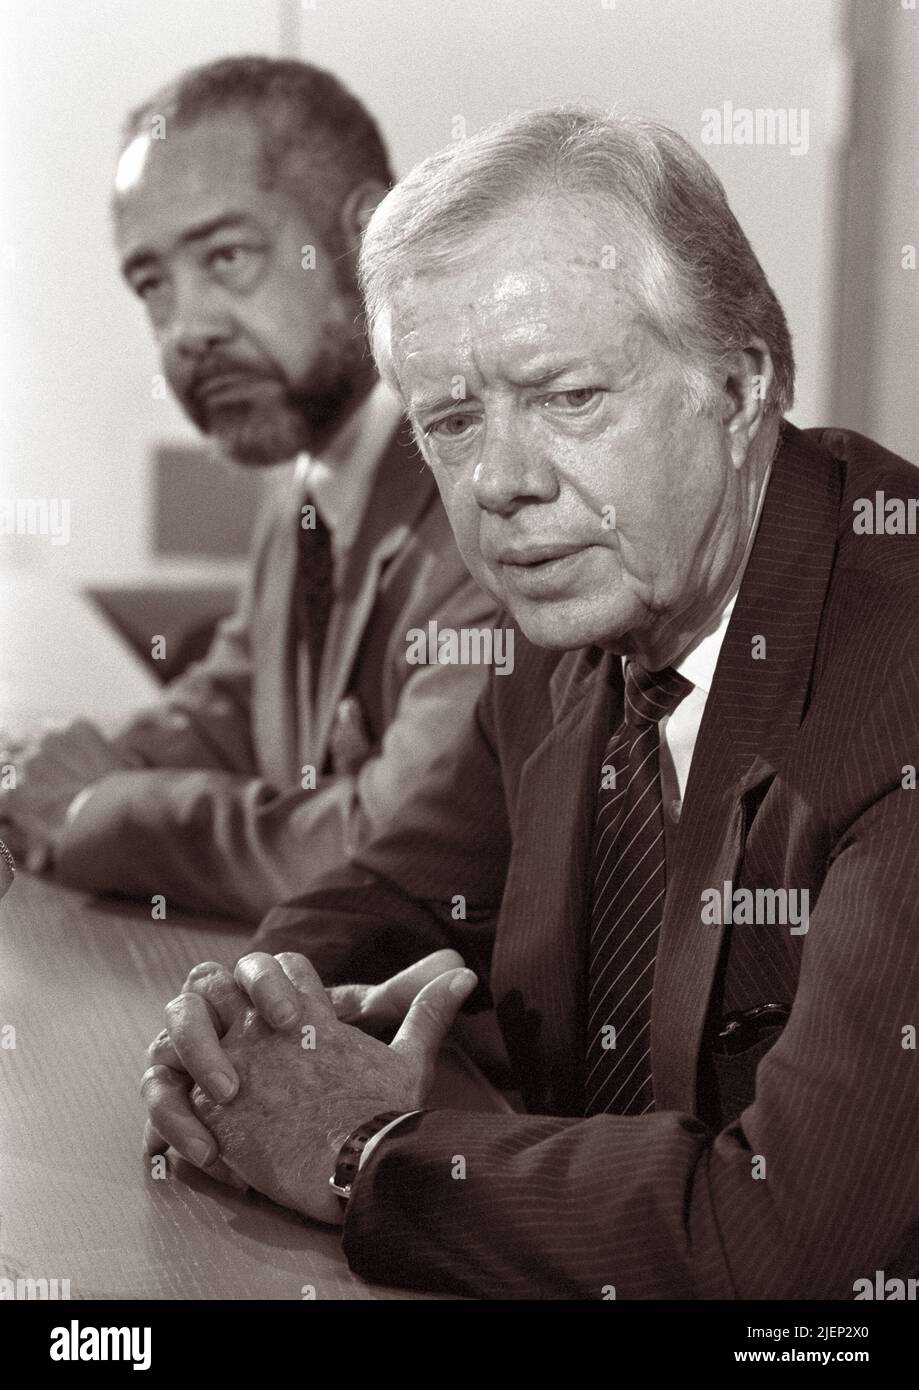 Der ehemalige US-Präsident Jimmy Carter bei einer Pressekonferenz am 6. Oktober 1988 in den Niederlanden auf dem Amsterdamer Flughafen Schiphol. Stockfoto